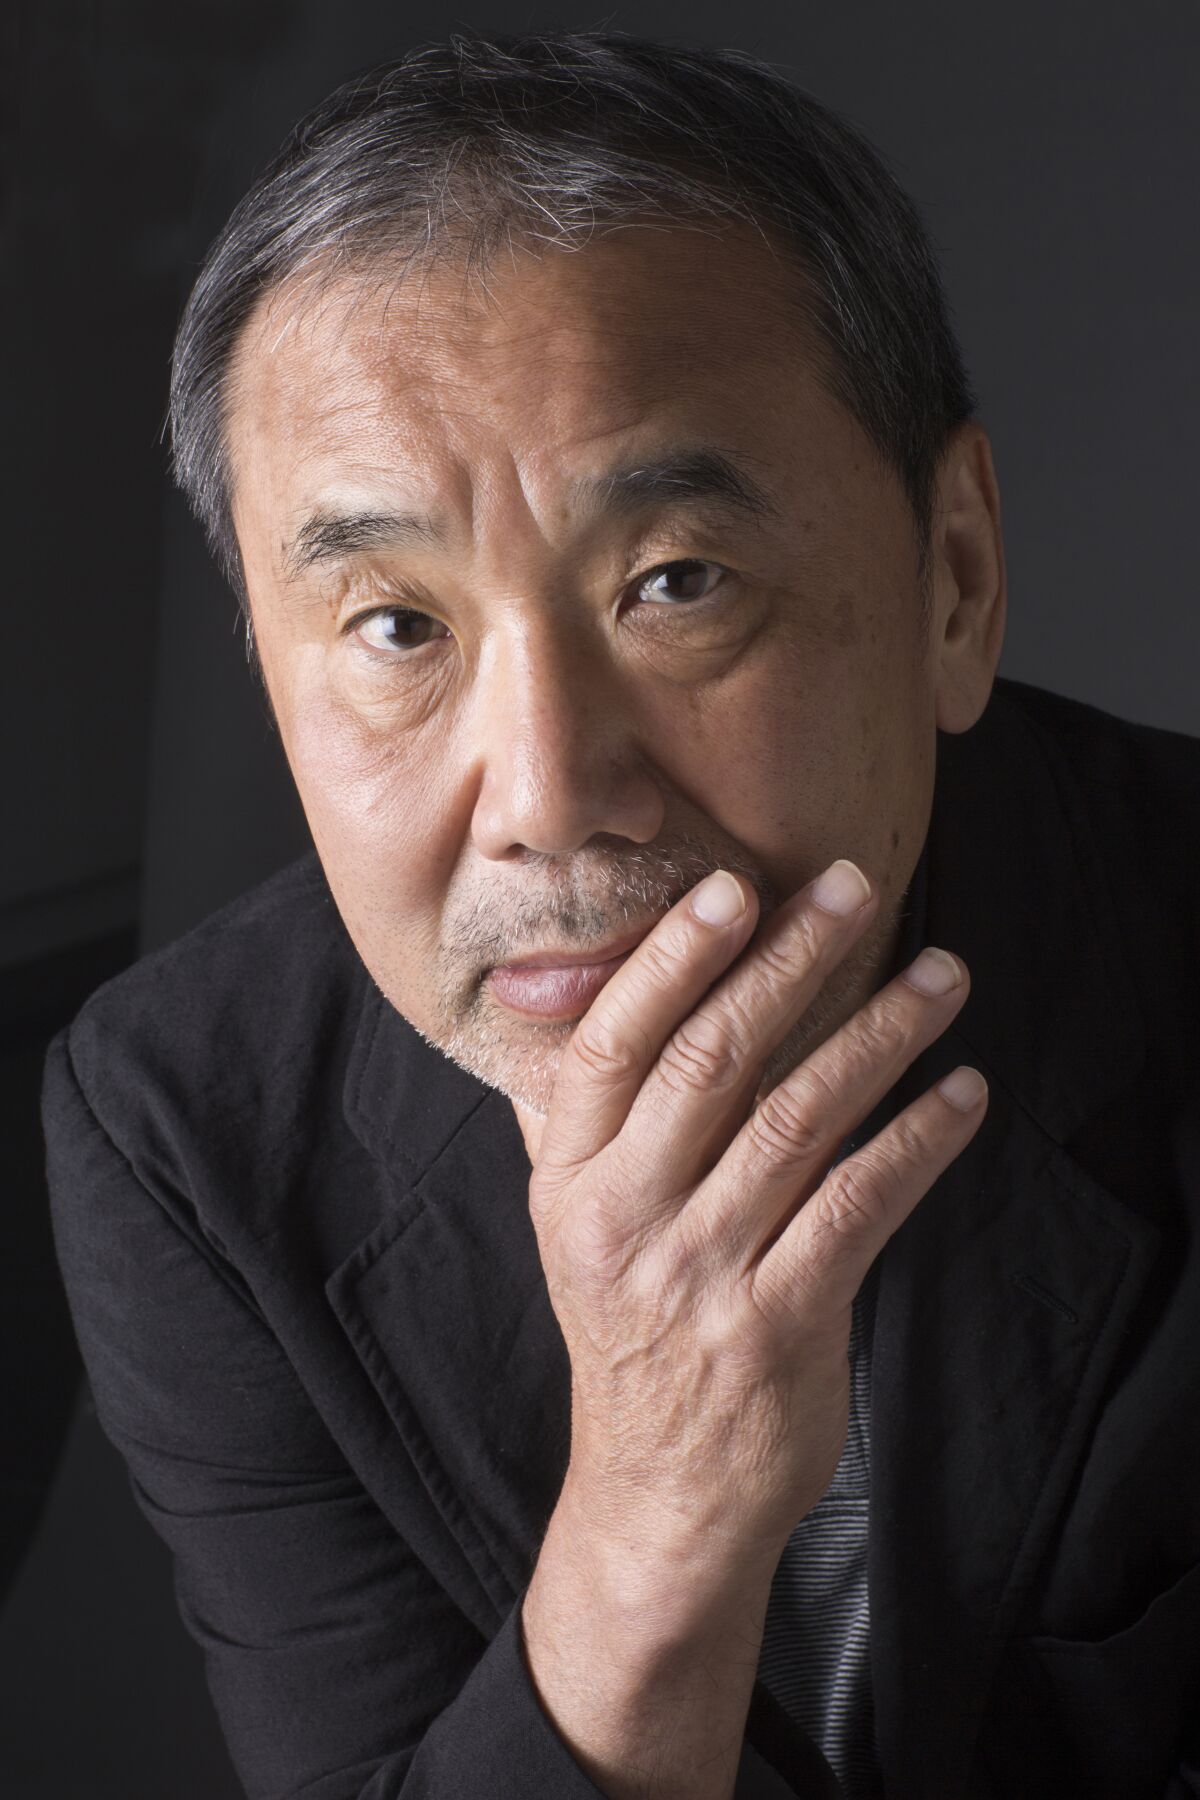 Author Haruki Murakami